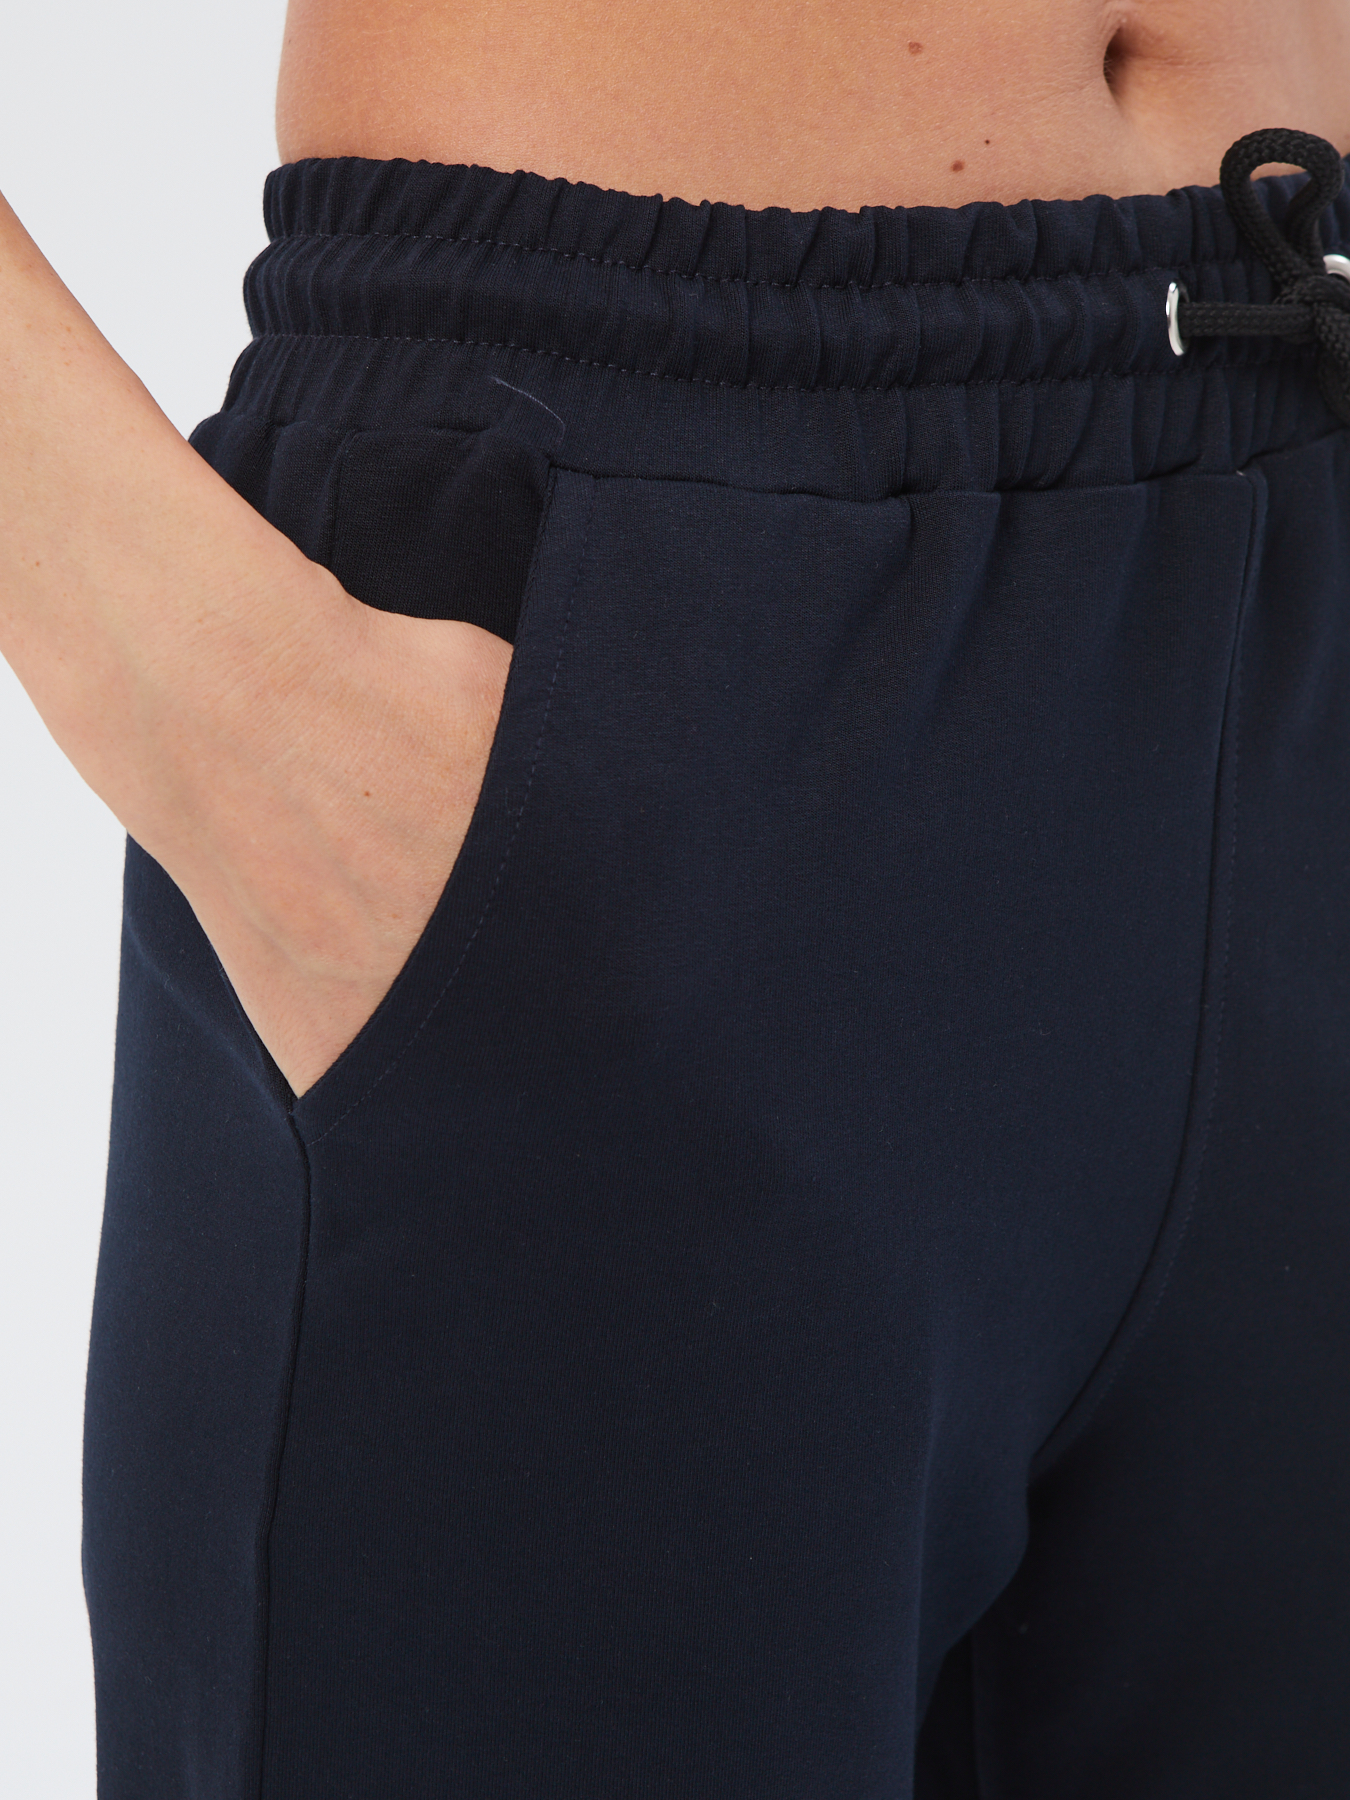 Спортивные брюки женские Still-expert б5 синие 48/150-165